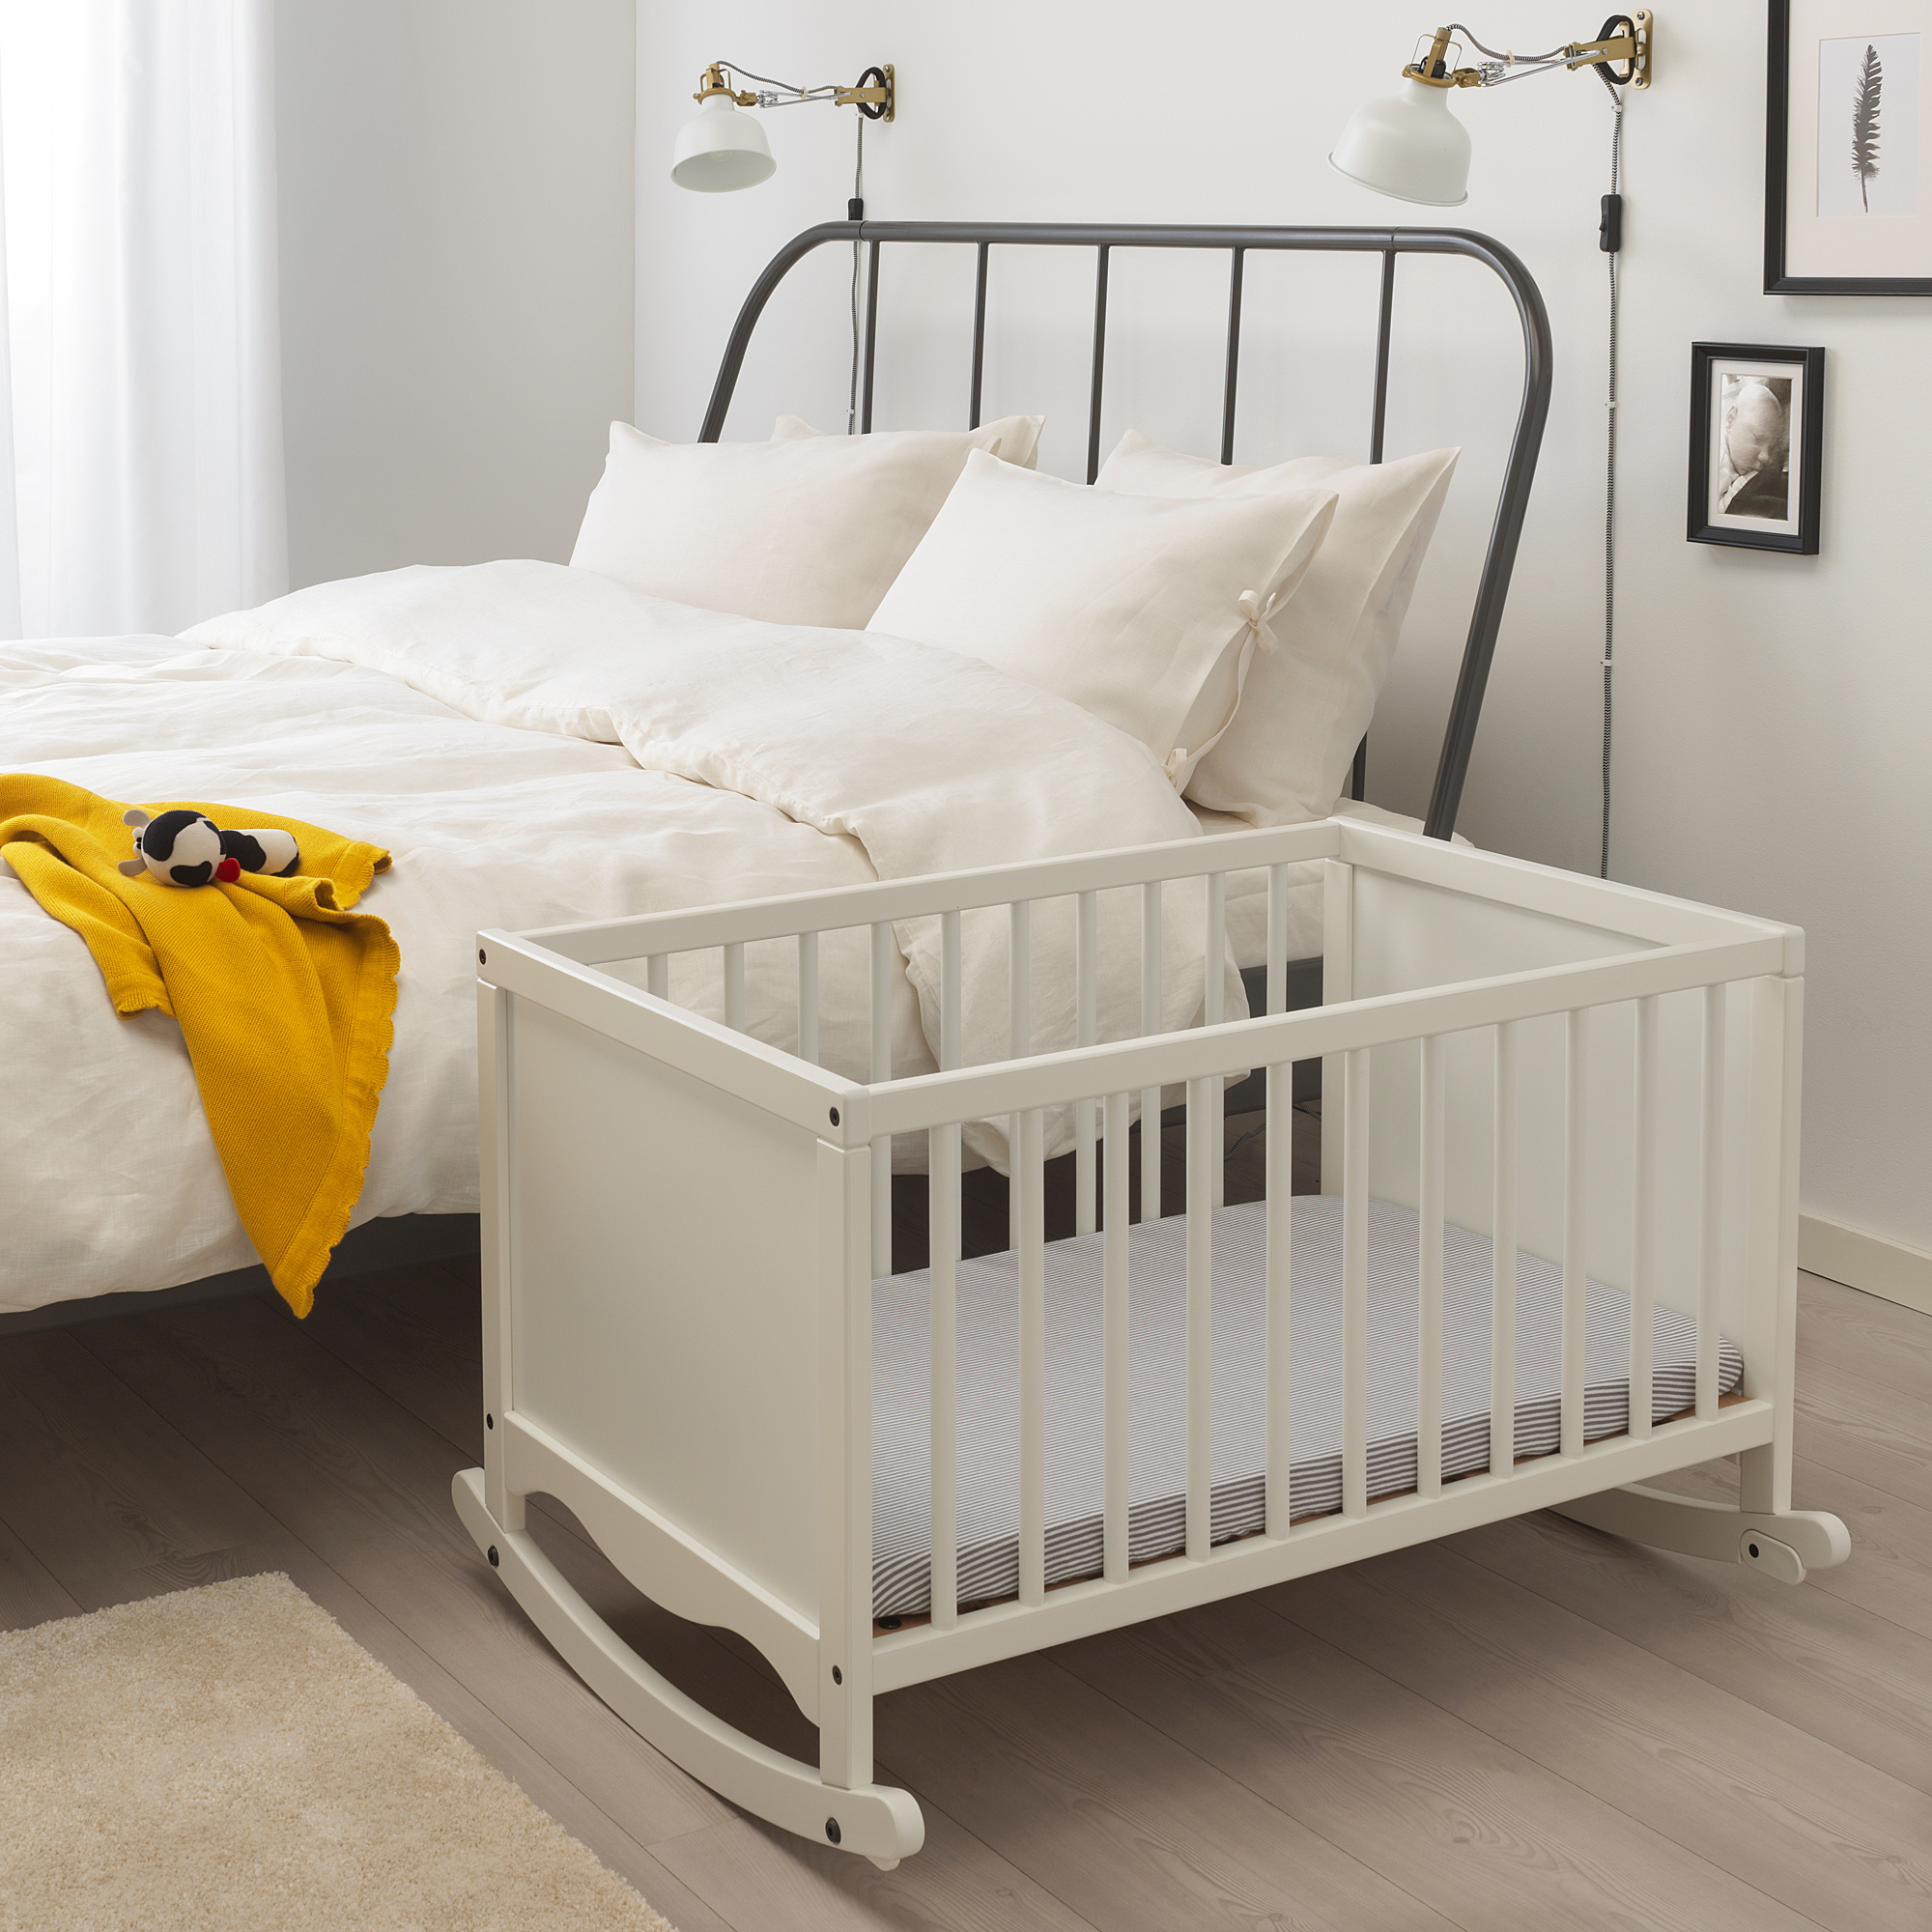 Ikea solgul детская кровать